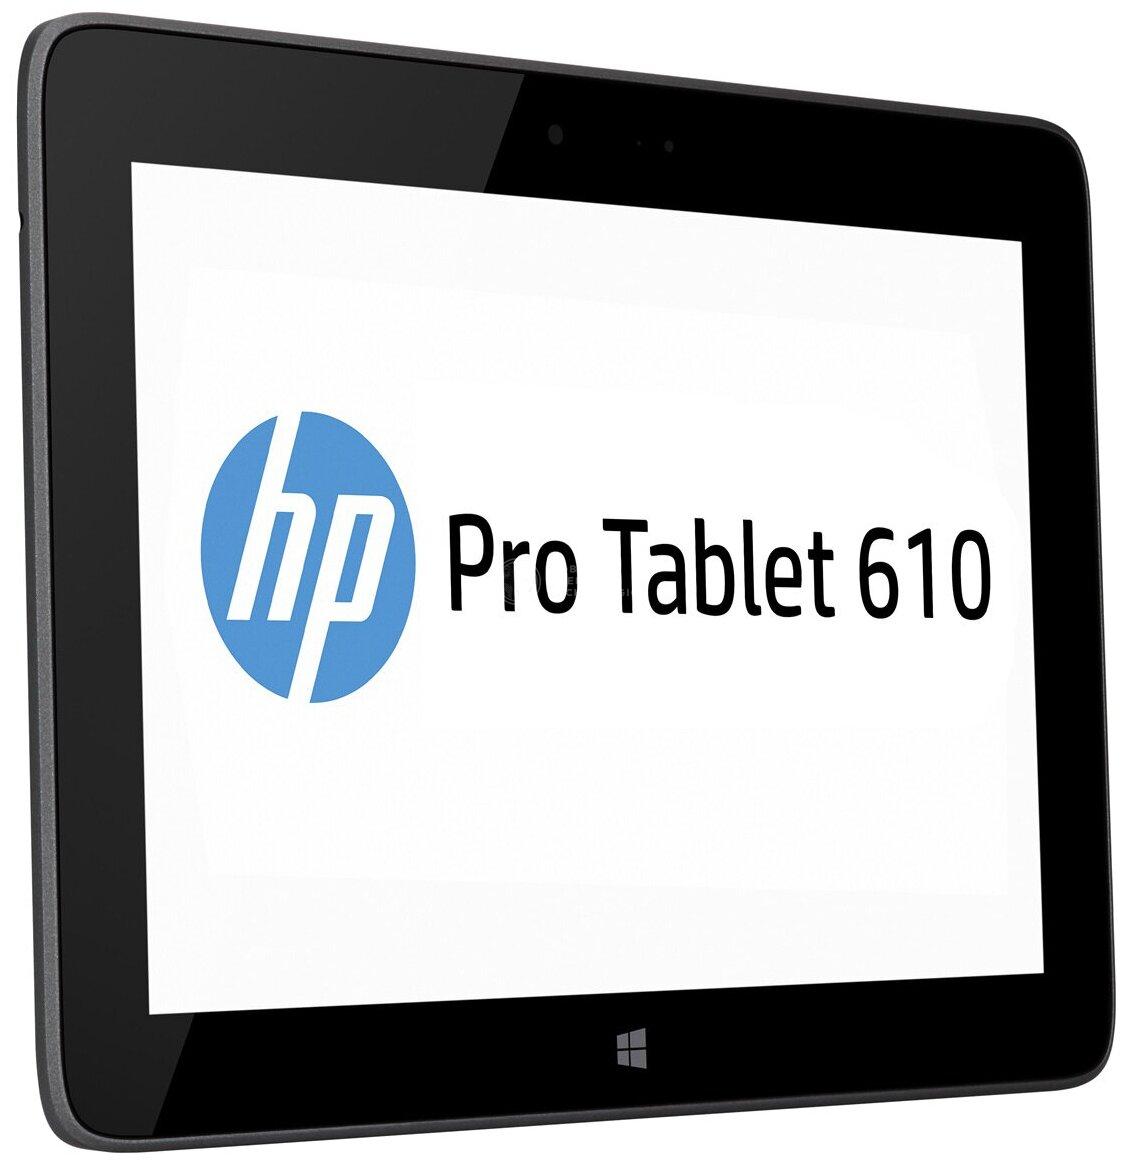 Pro Tablet 610 (G4T86UT)